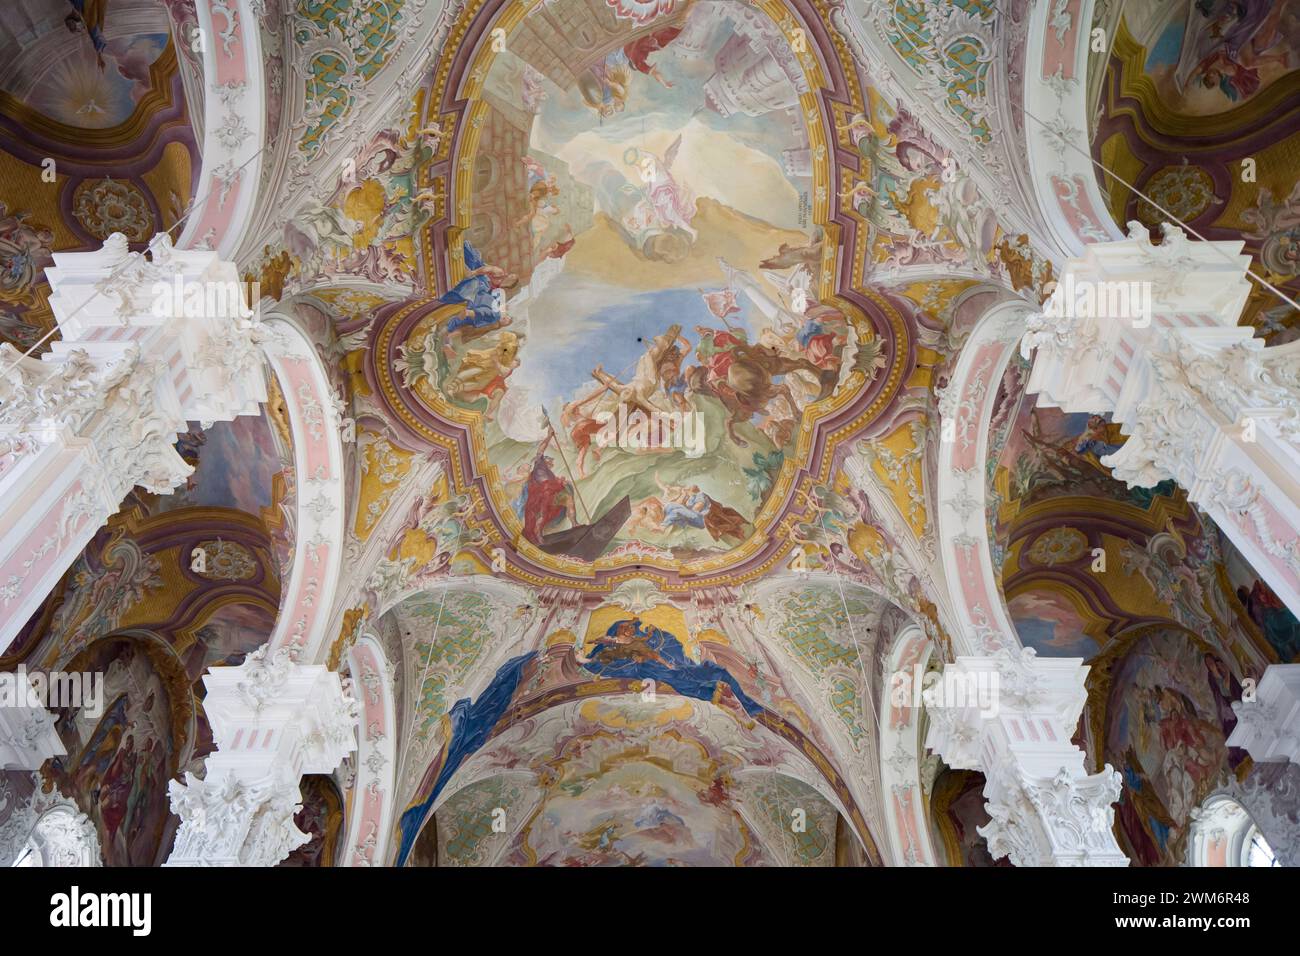 Église Saint-Pierre / Peterskirche, Mayence, Allemagne un bâtiment rococo de 1749-56, bombardé pendant la guerre et restauré fin C20. Intérieur avec voûtes ornées de fresques. Banque D'Images